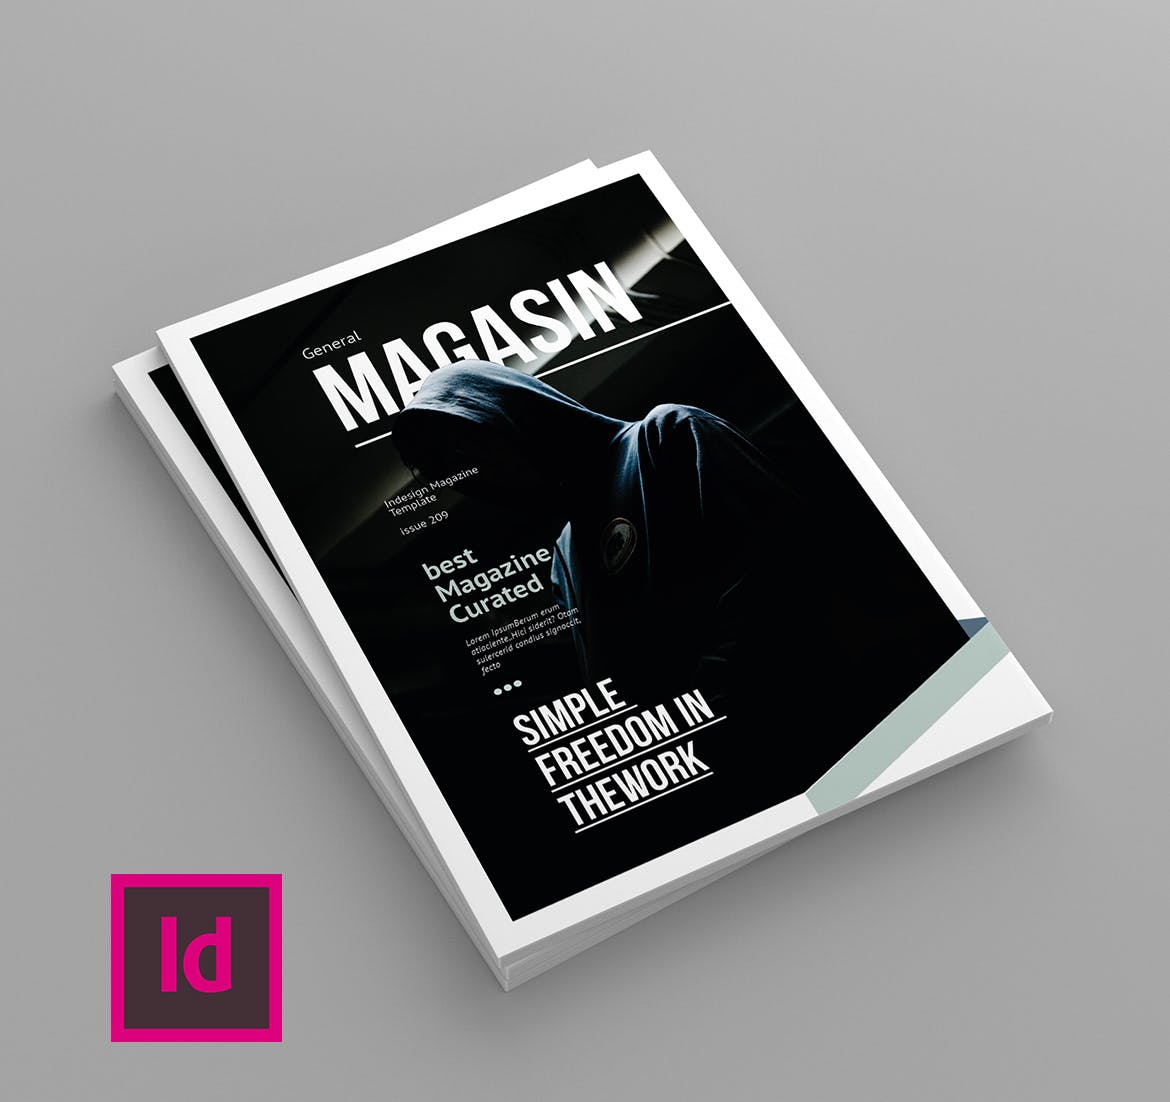 多用途企业宣传素材库精选杂志排版设计模板 Magasin – Magazine Template插图(1)